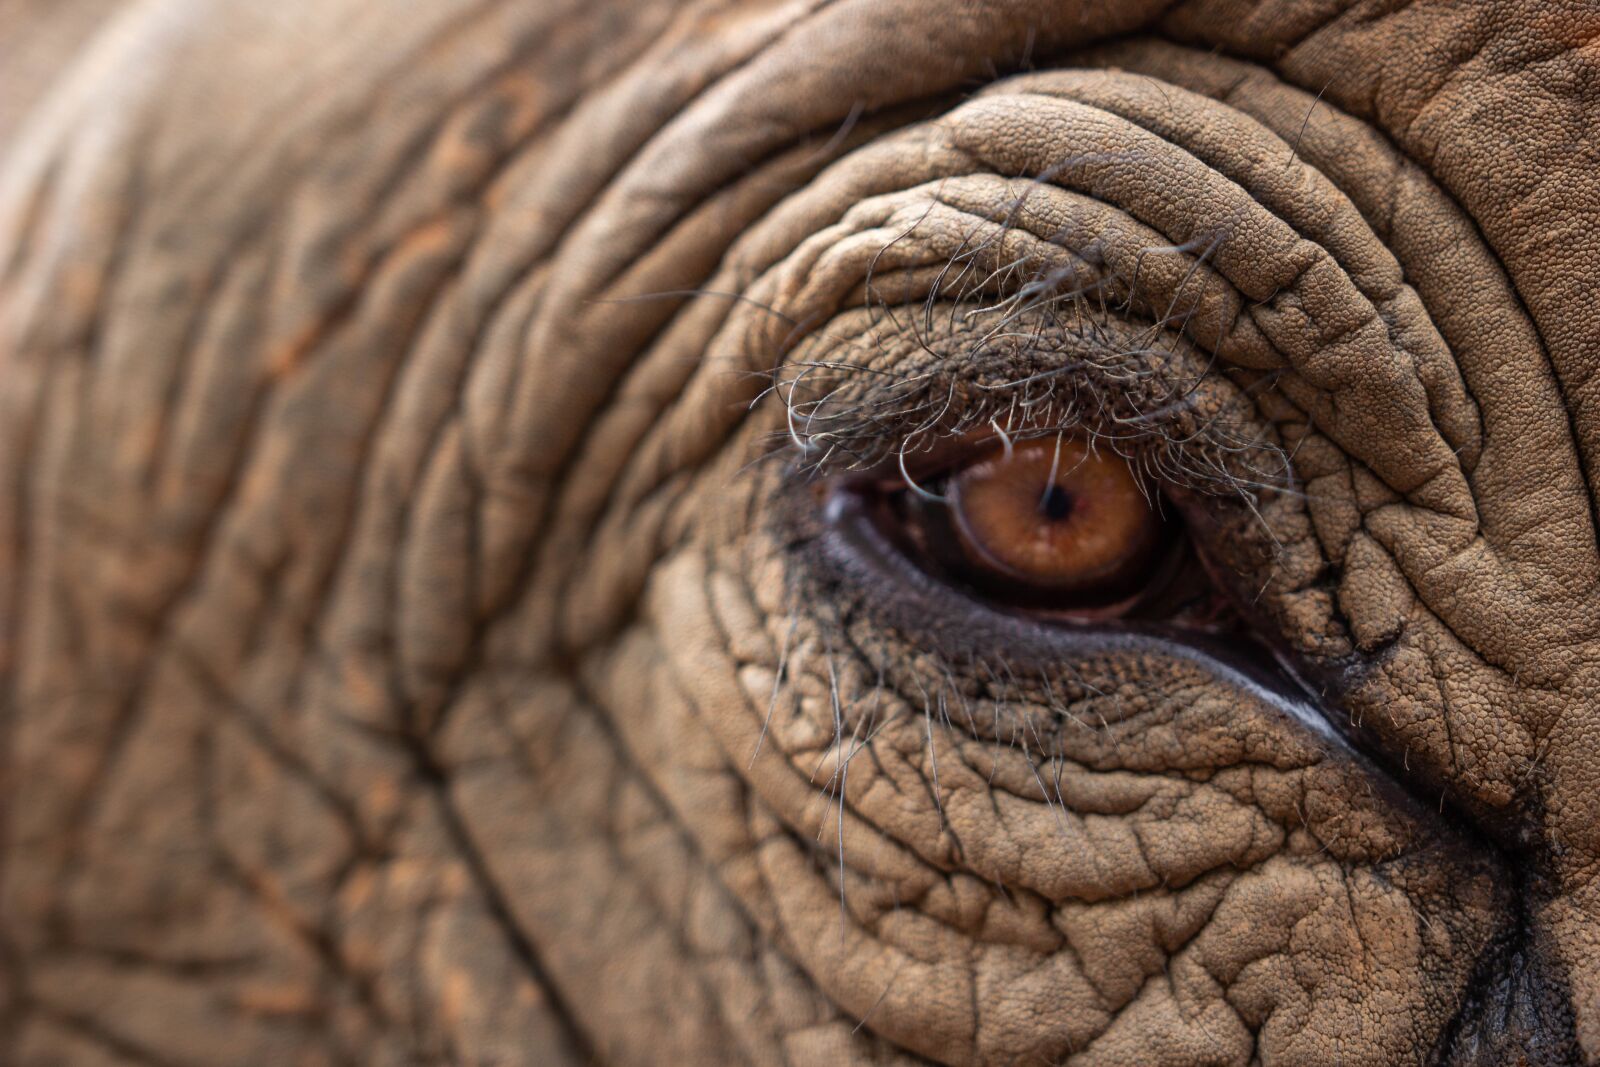 Canon EOS 60D sample photo. Elephant's eye, elephant, pachyderm photography